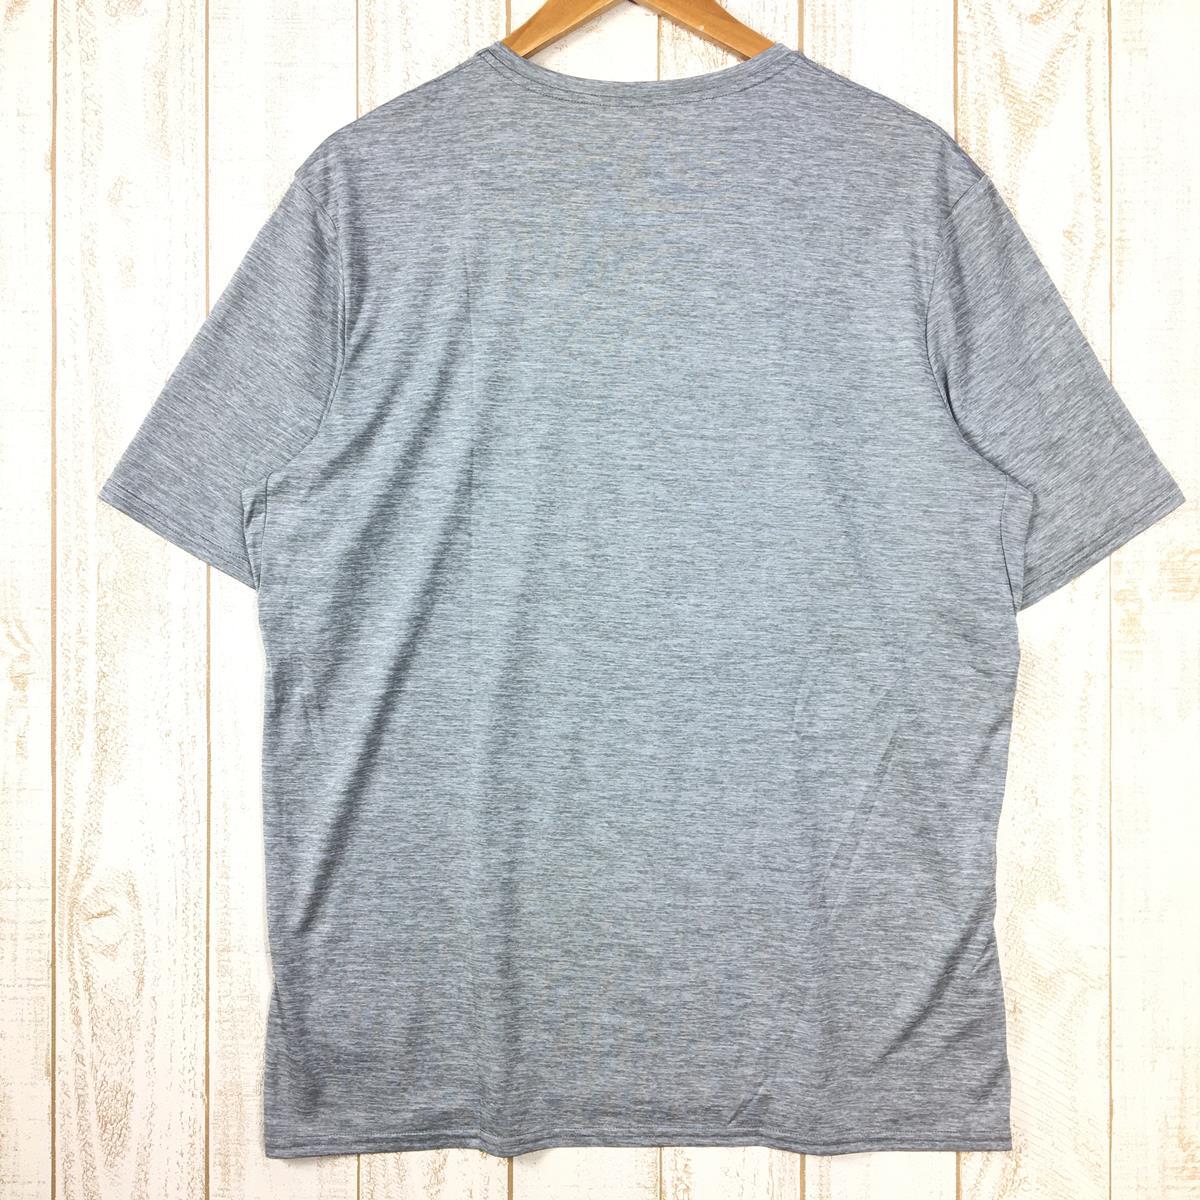 MENs L パタゴニア キャプリーン デイリー グラフィック Tシャツ CAPILENE DAILY GRAPHIC T-SHIRT PATAGOの画像6